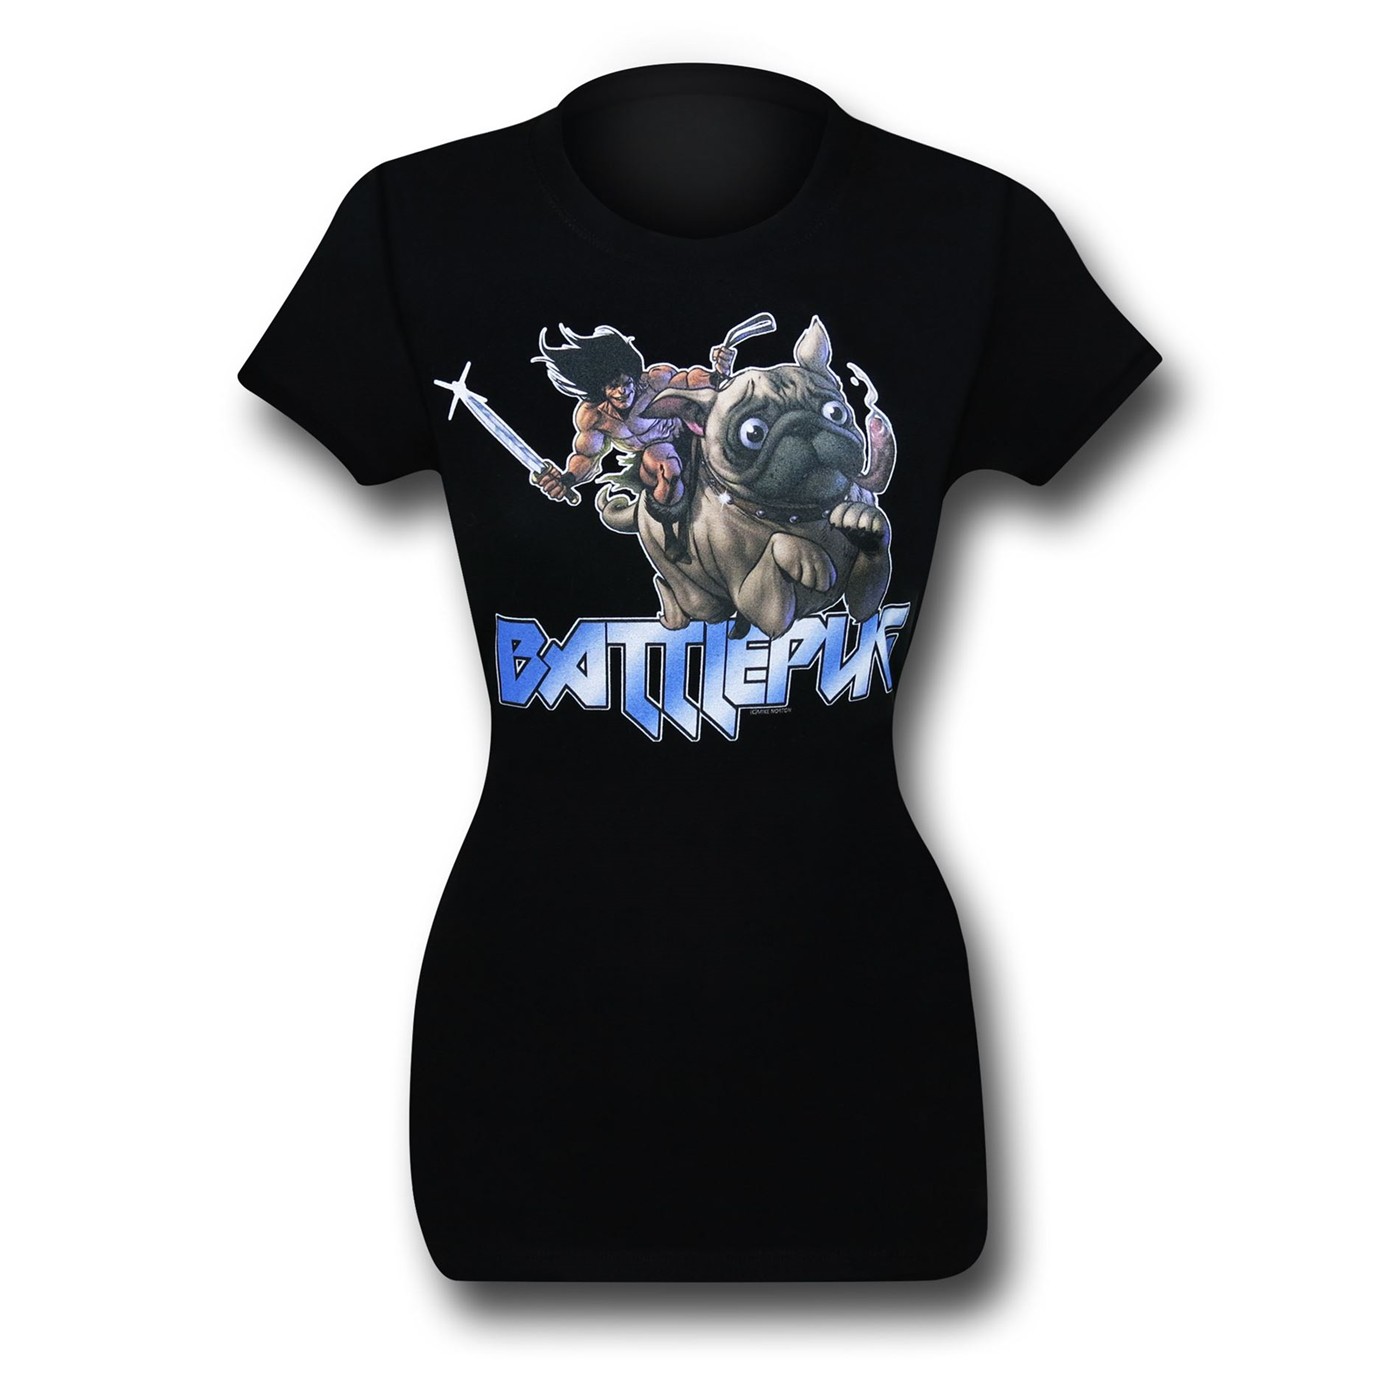 BattlePug Warrior Women's T-Shirt